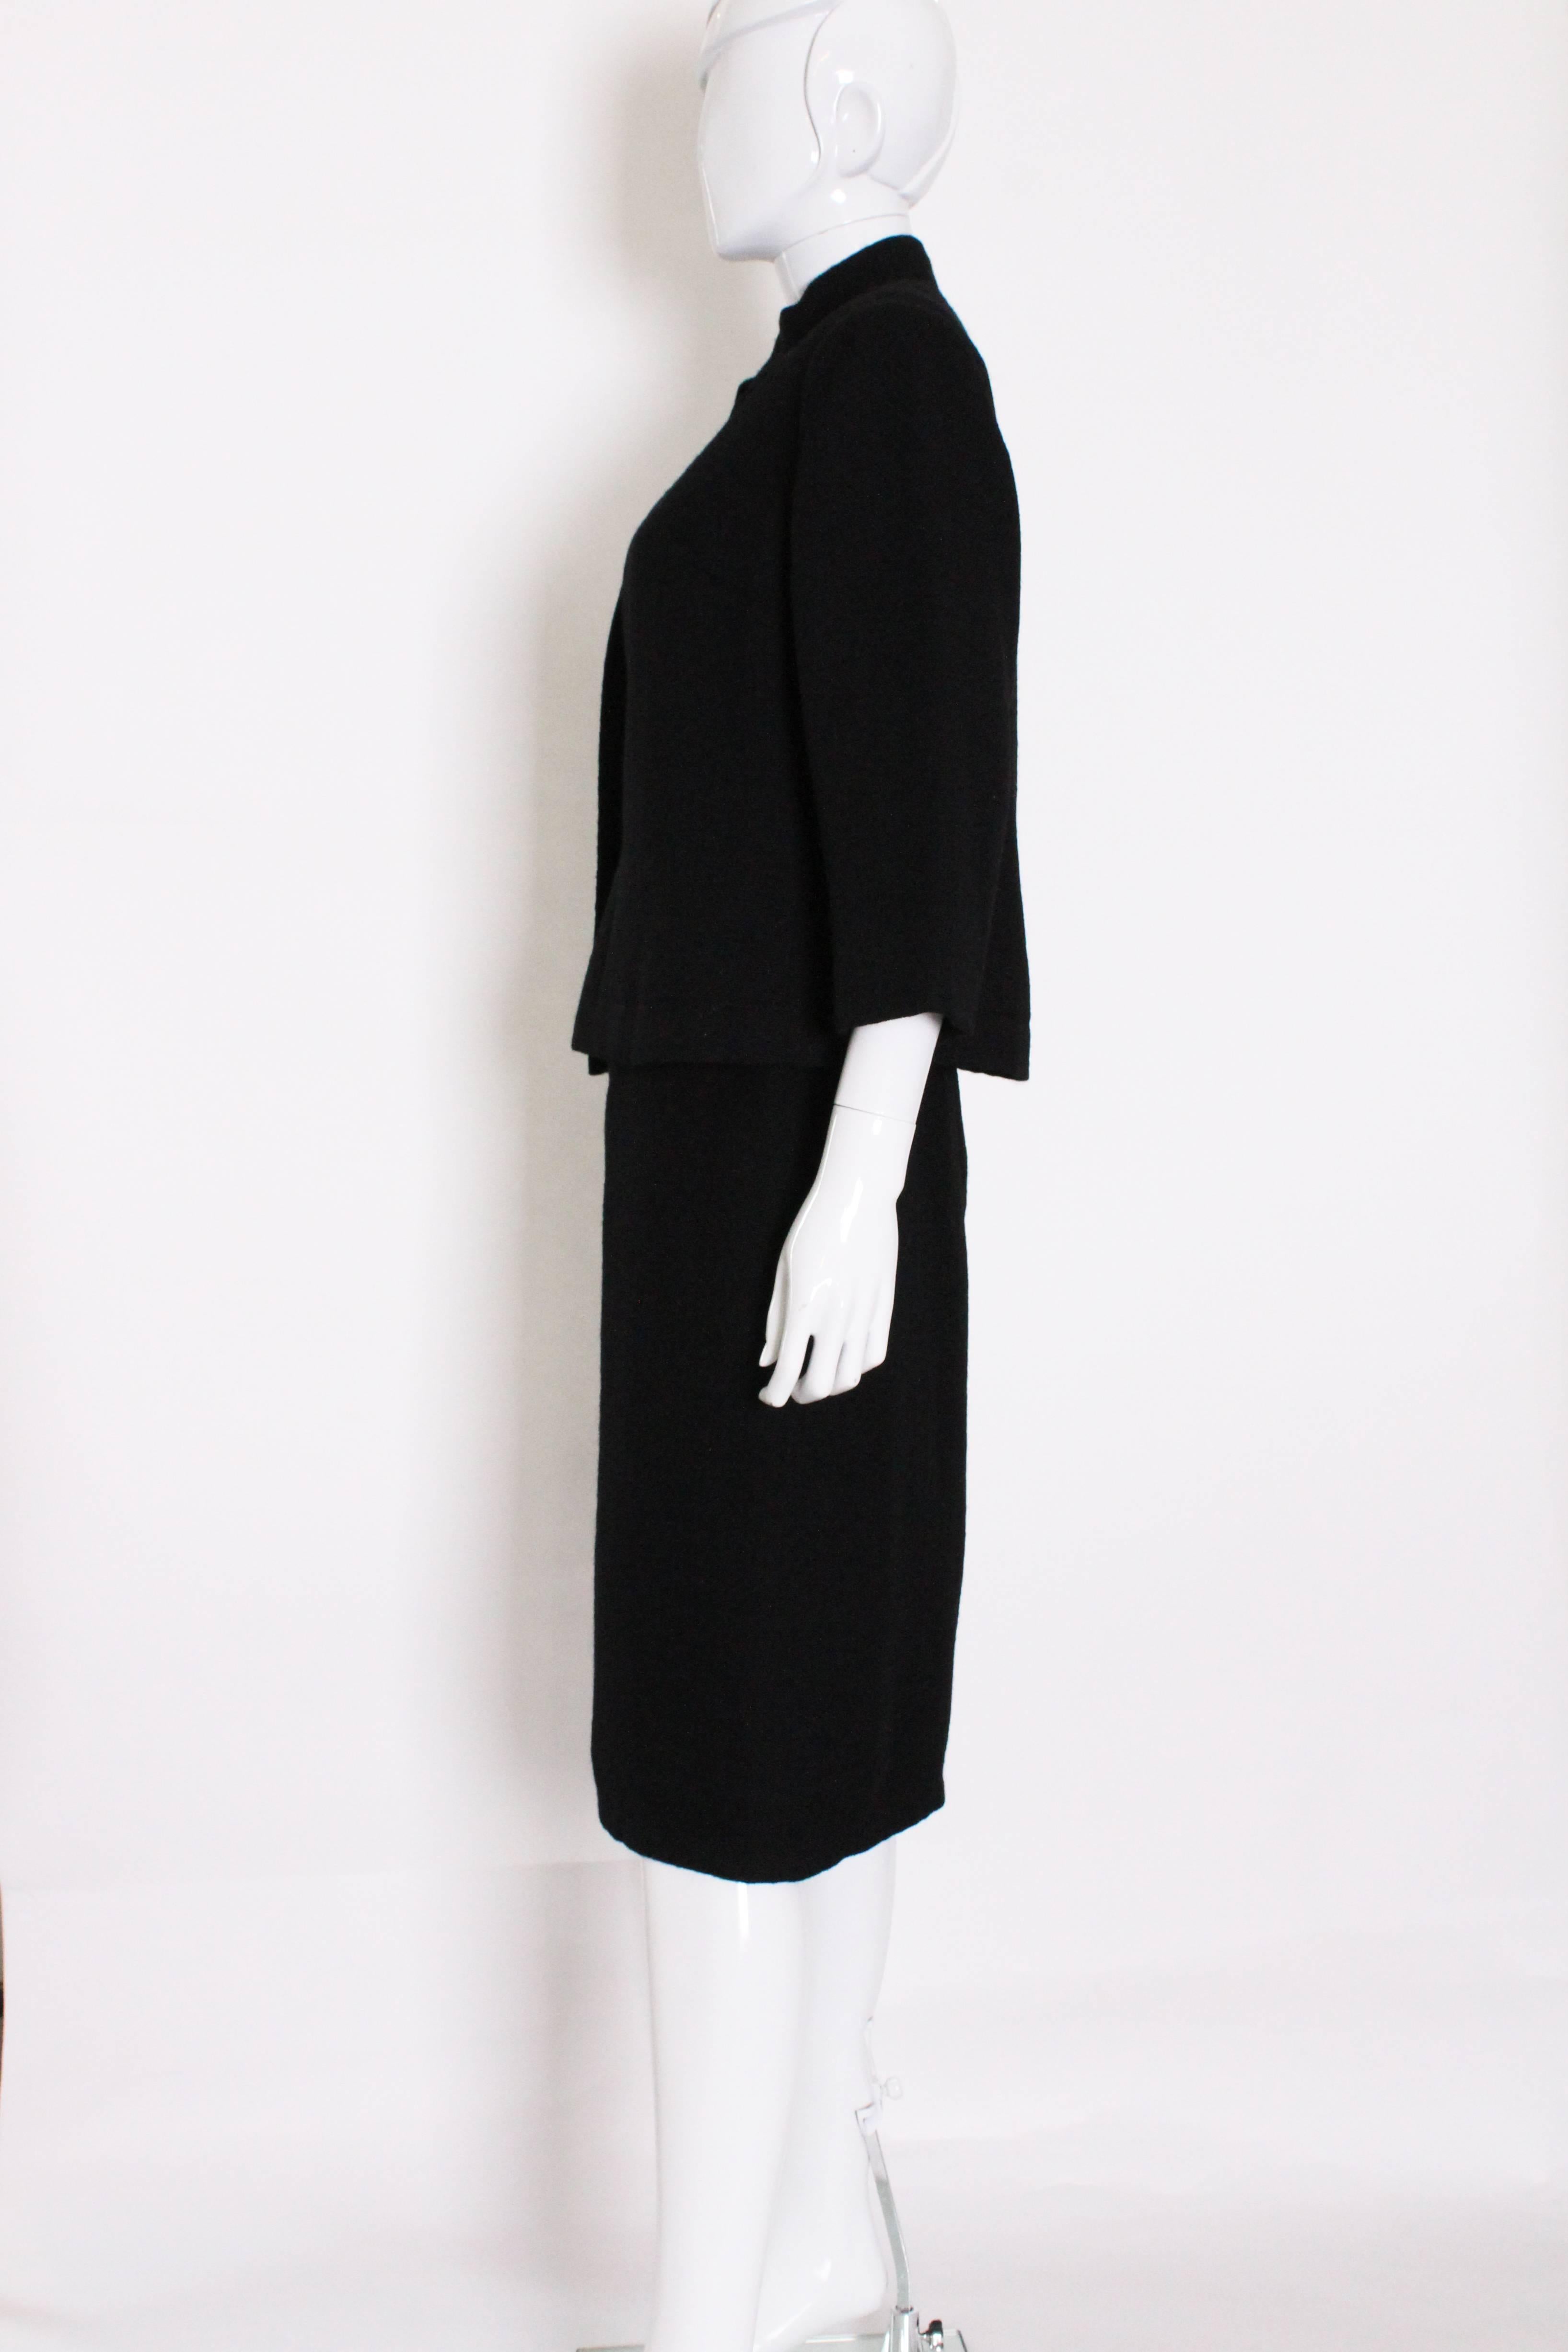 Vintage Christian Dior Black Skirt Suit at 1stDibs